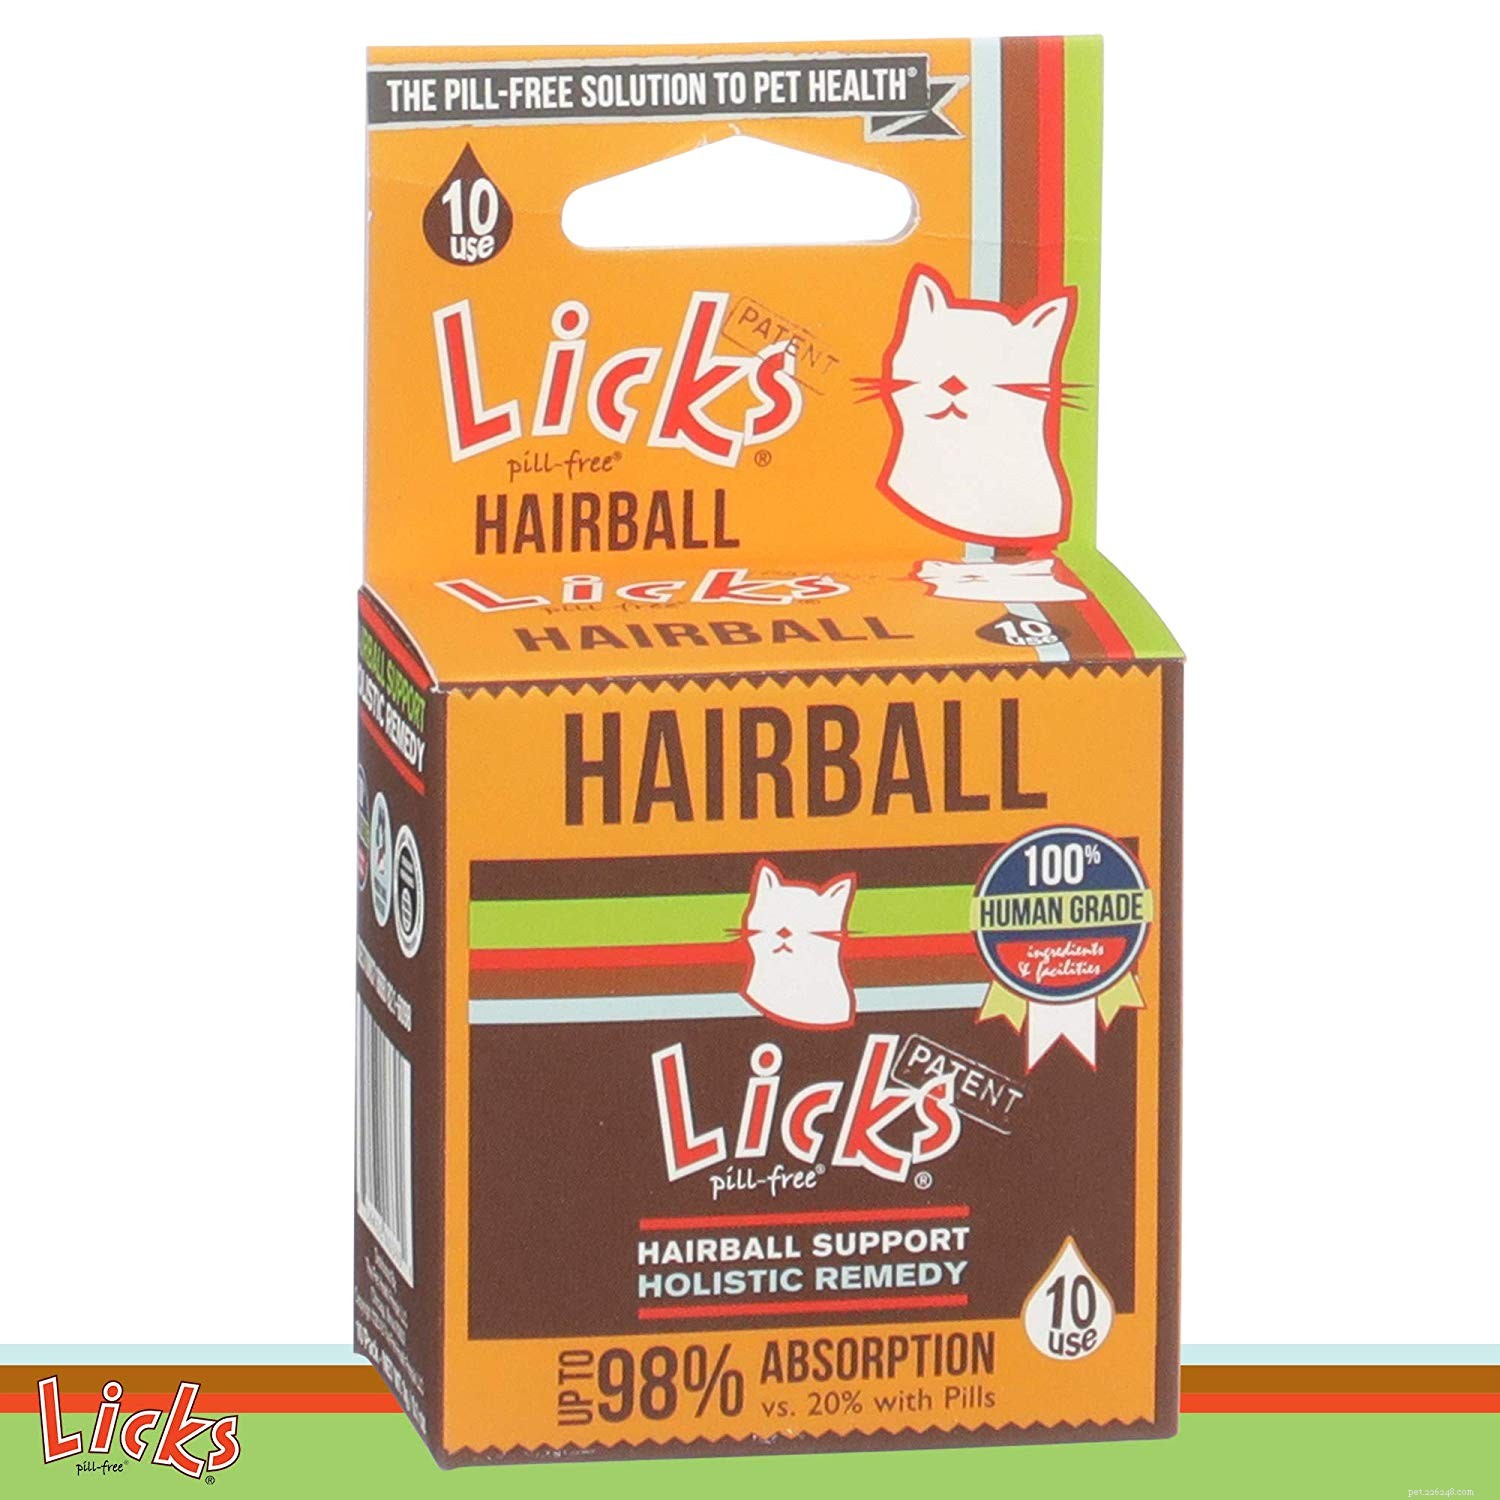 Meilleurs produits anti-boules de poils pour chats